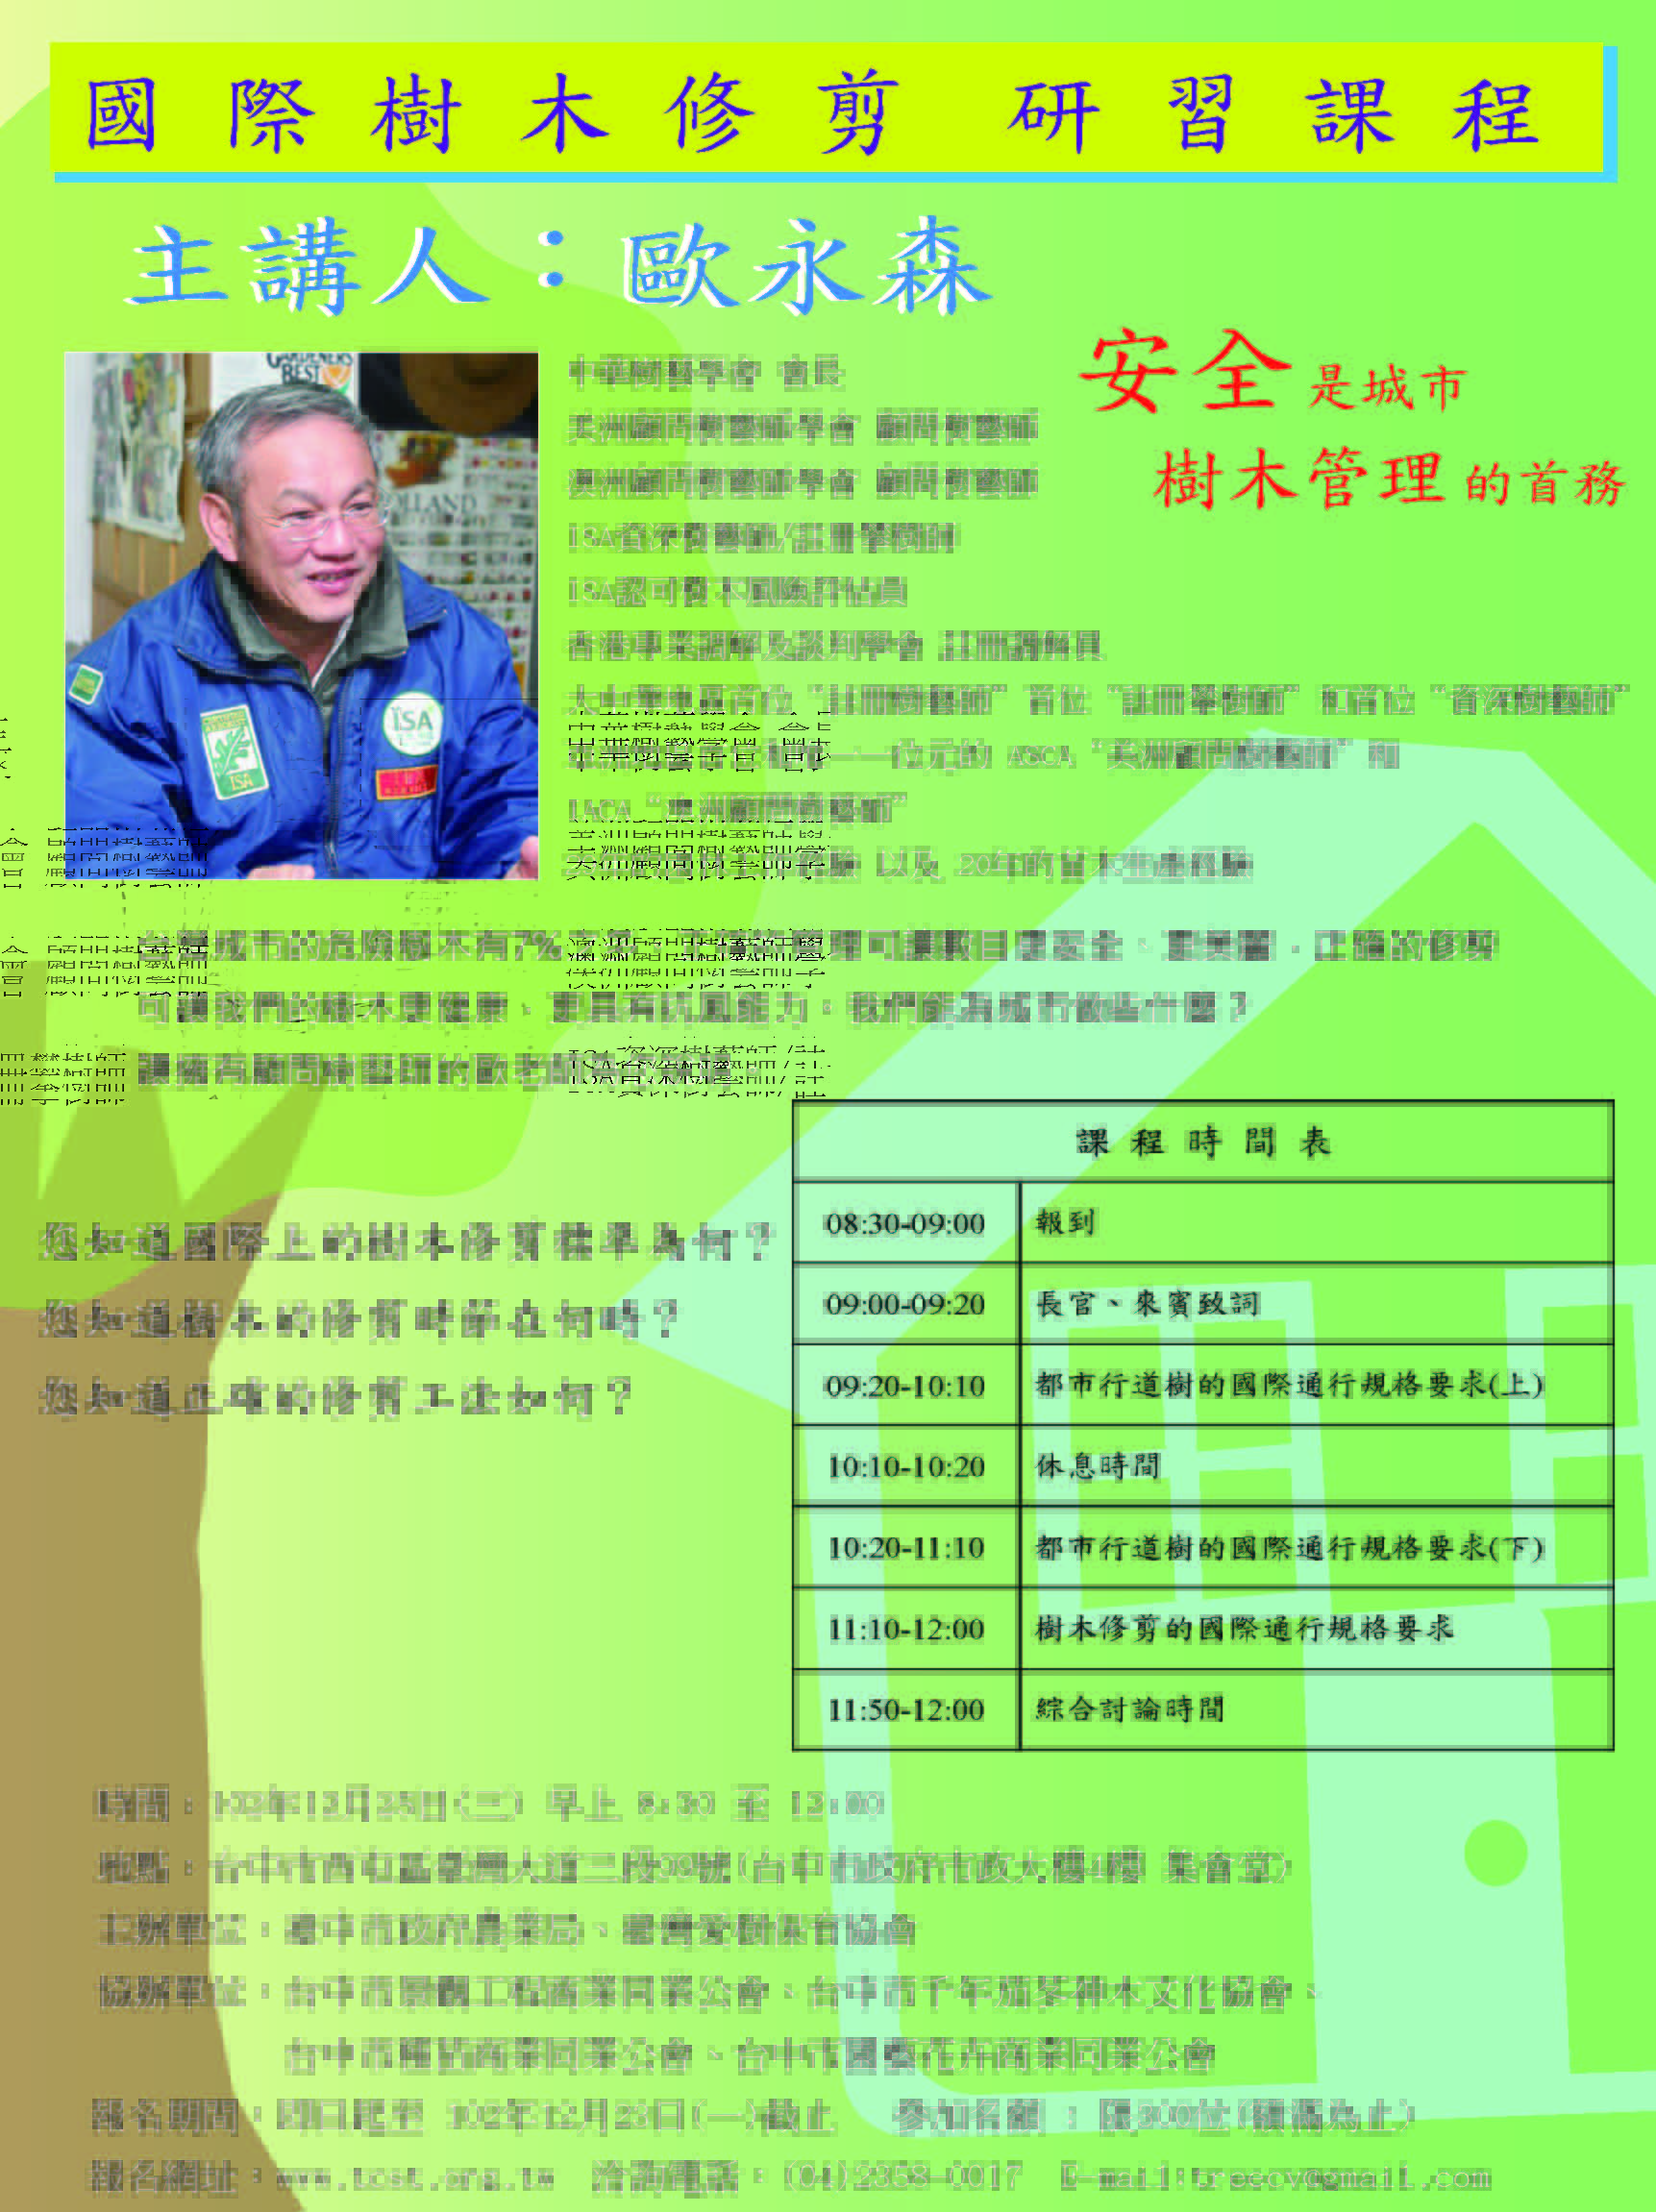 Taiwan --- Taichung 國際樹木修剪 課程規劃